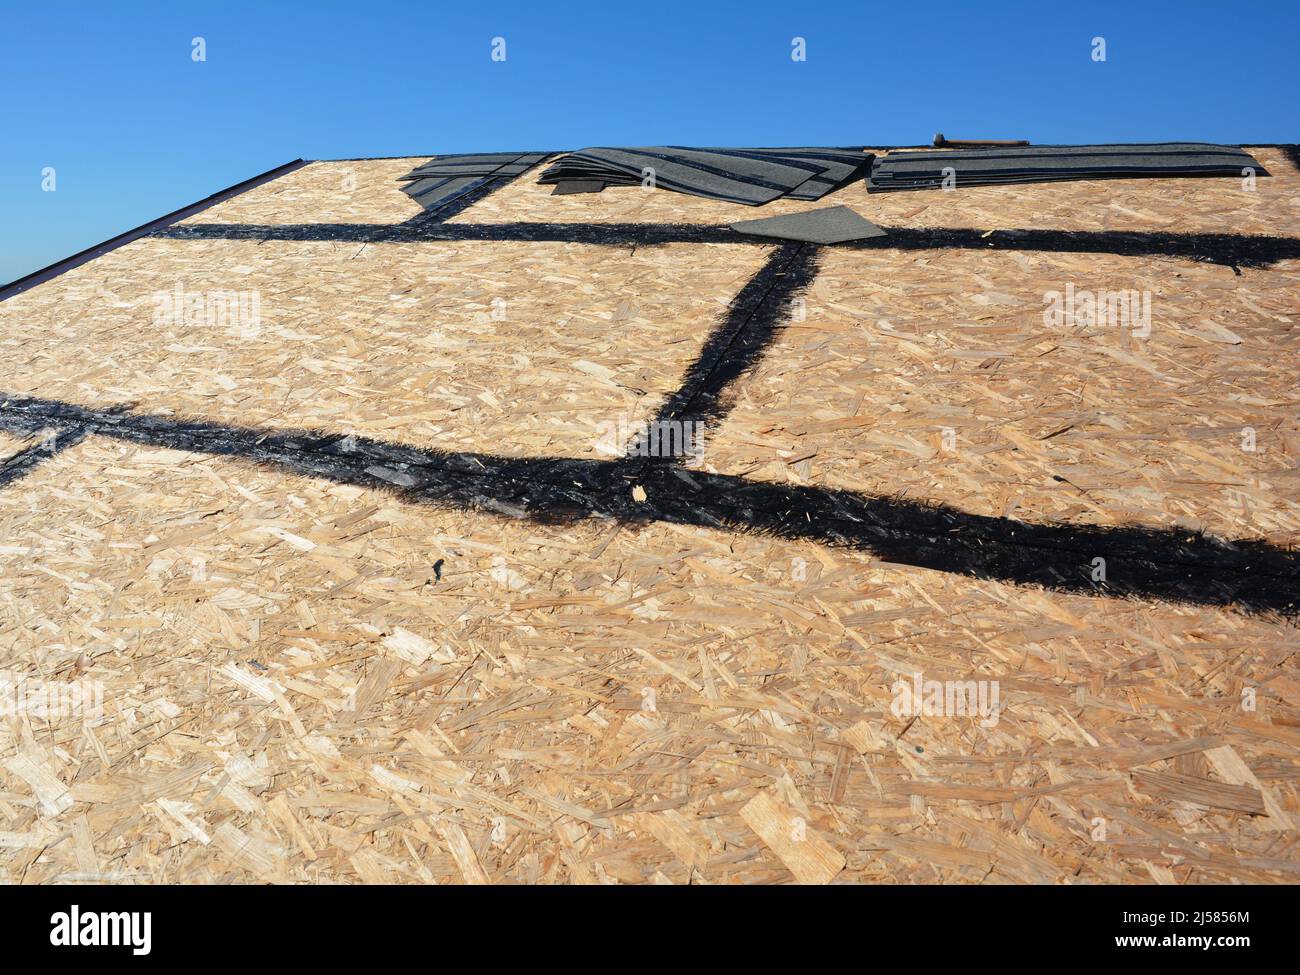 Dachvorbereitung Asphaltschindeln Installation auf Hausbau Holzdach mit  Bitumenspray. Dachkonstruktion. Bitumendach montieren sh Stockfotografie -  Alamy